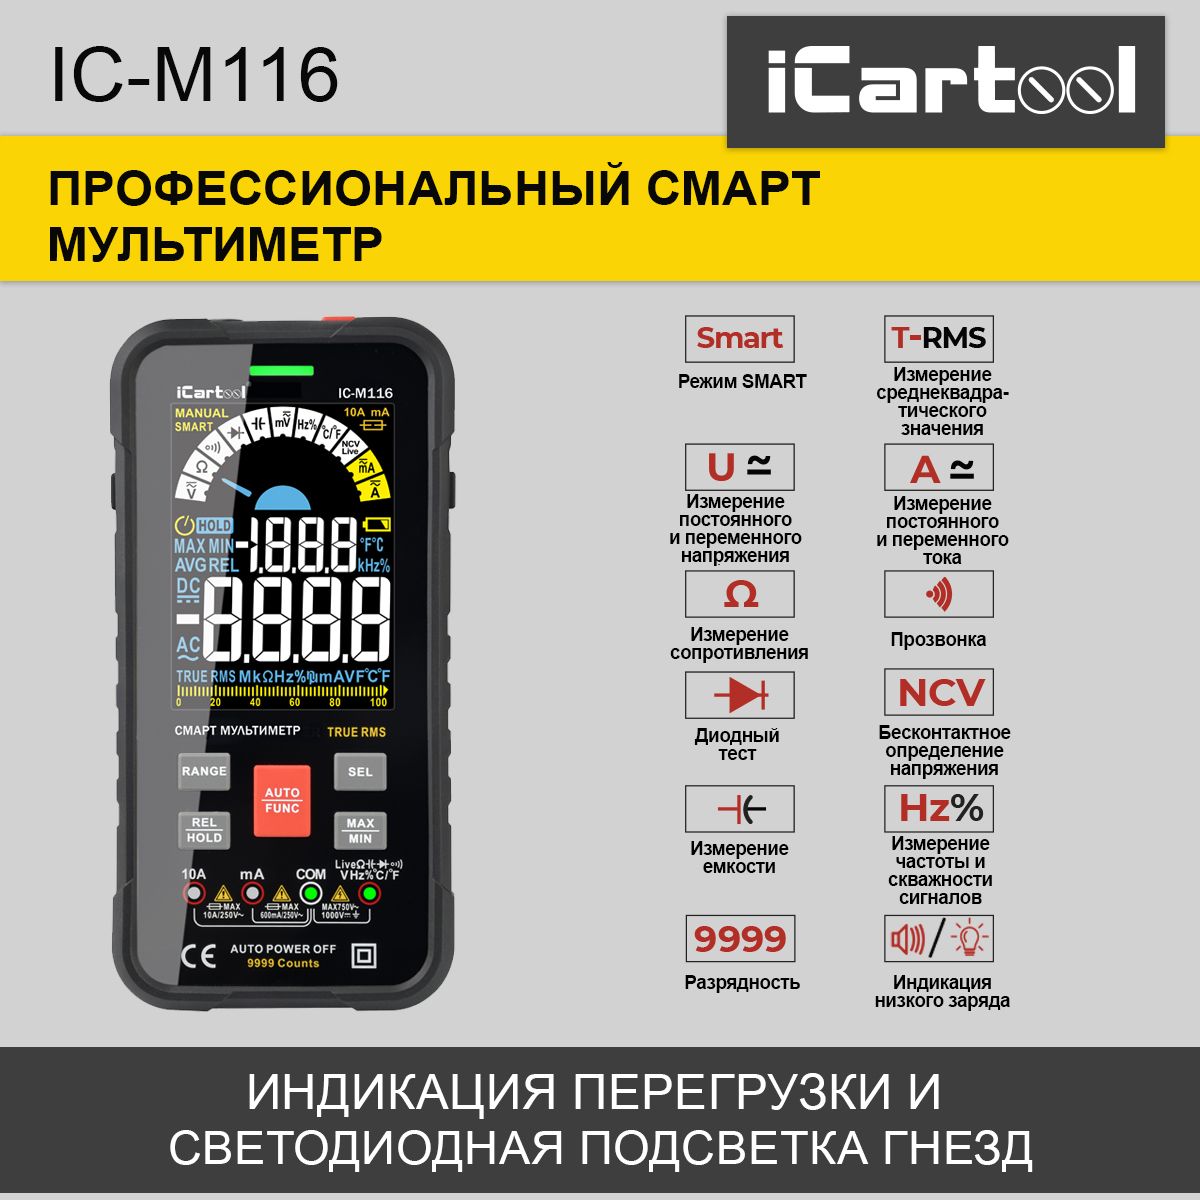 Профессиональный смарт мультиметр iCartool IC-M116 цифровой смарт мультиметр на аккумуляторе icartool ic m117